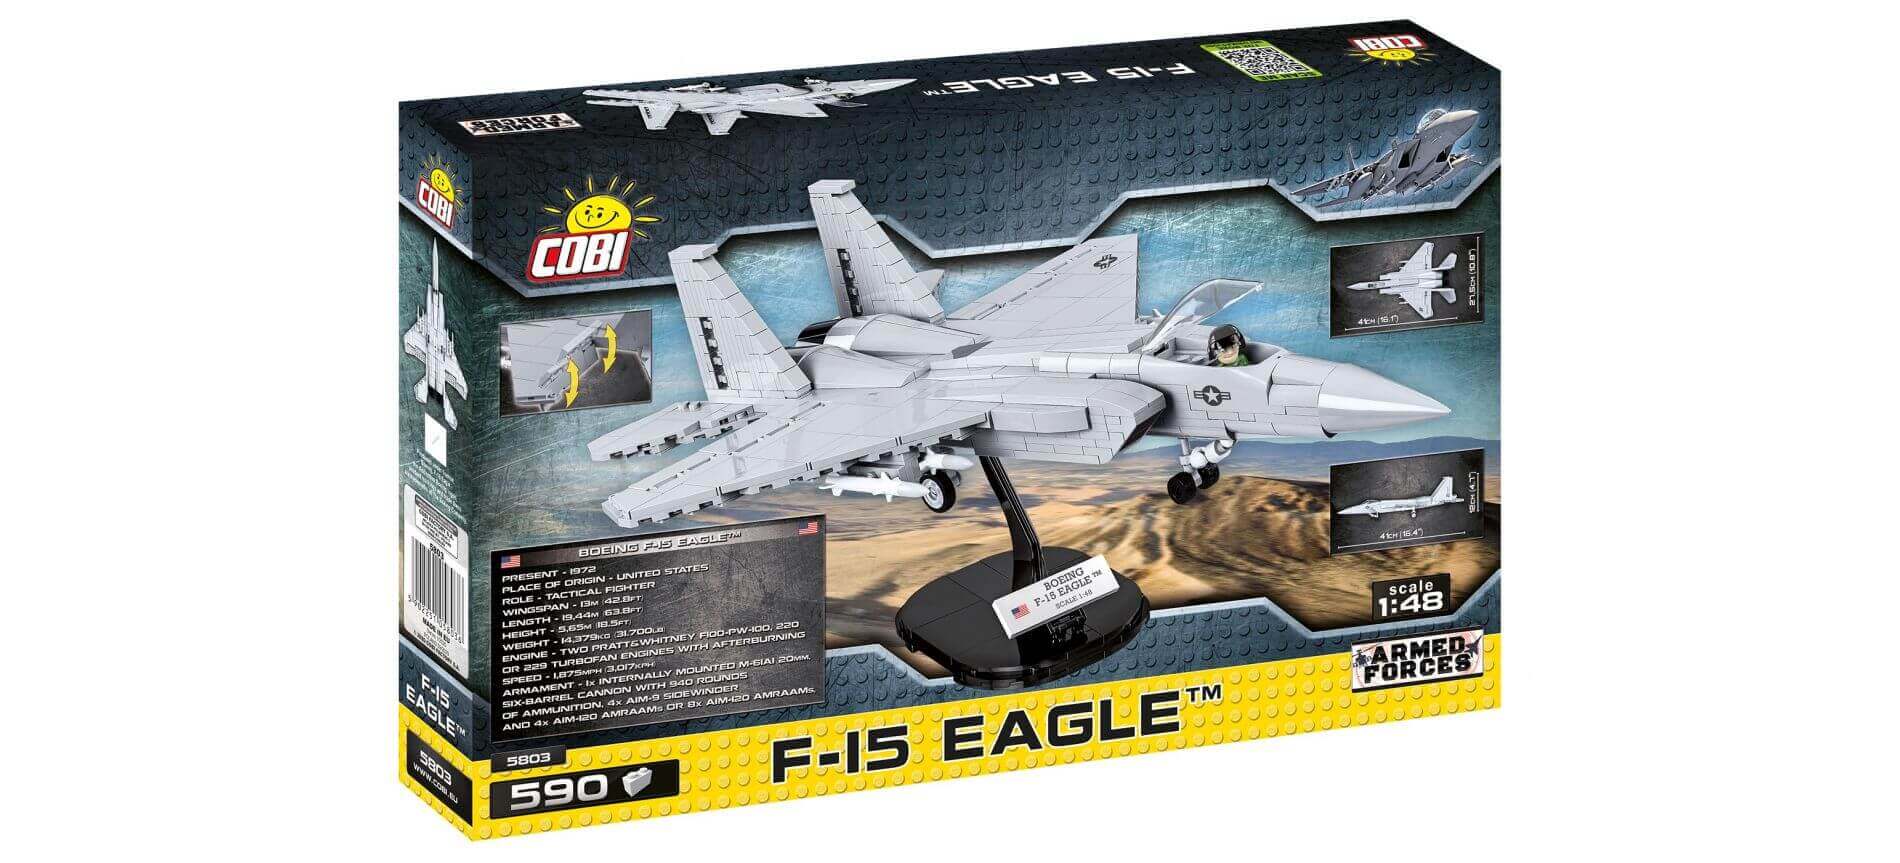 4X jouet avion de chasse jouet pour enfants 